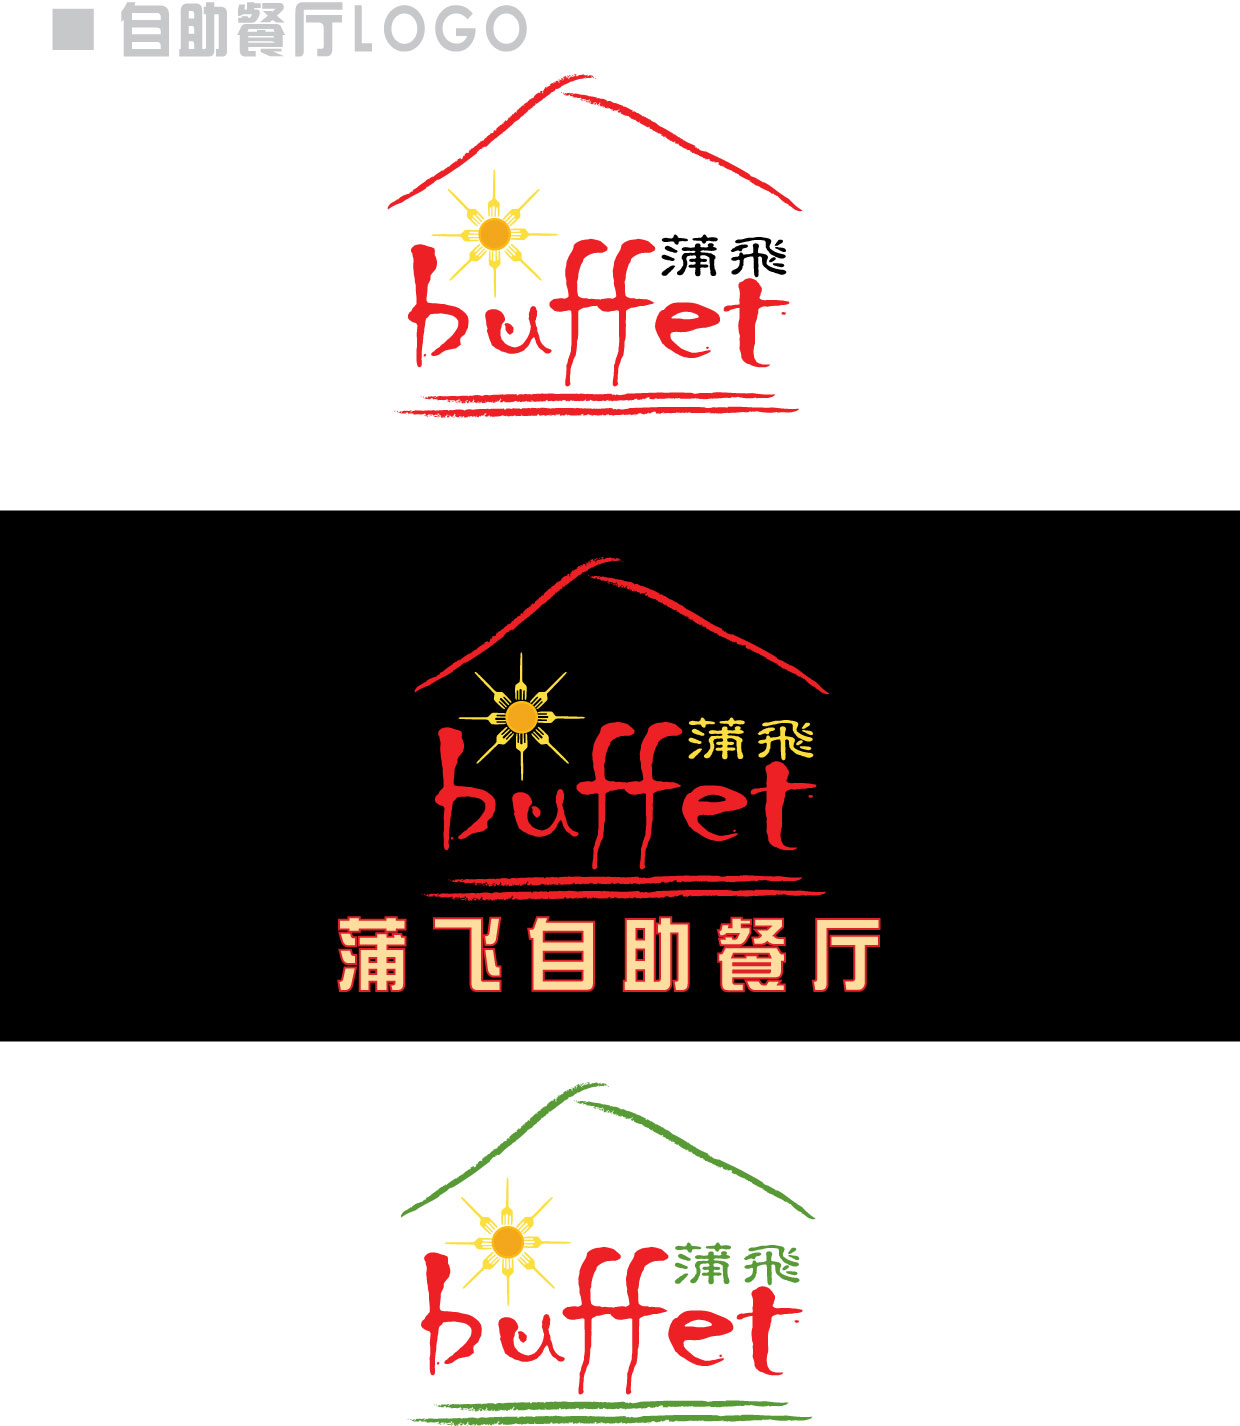 自助餐厅logo设计_2622986_k68威客网